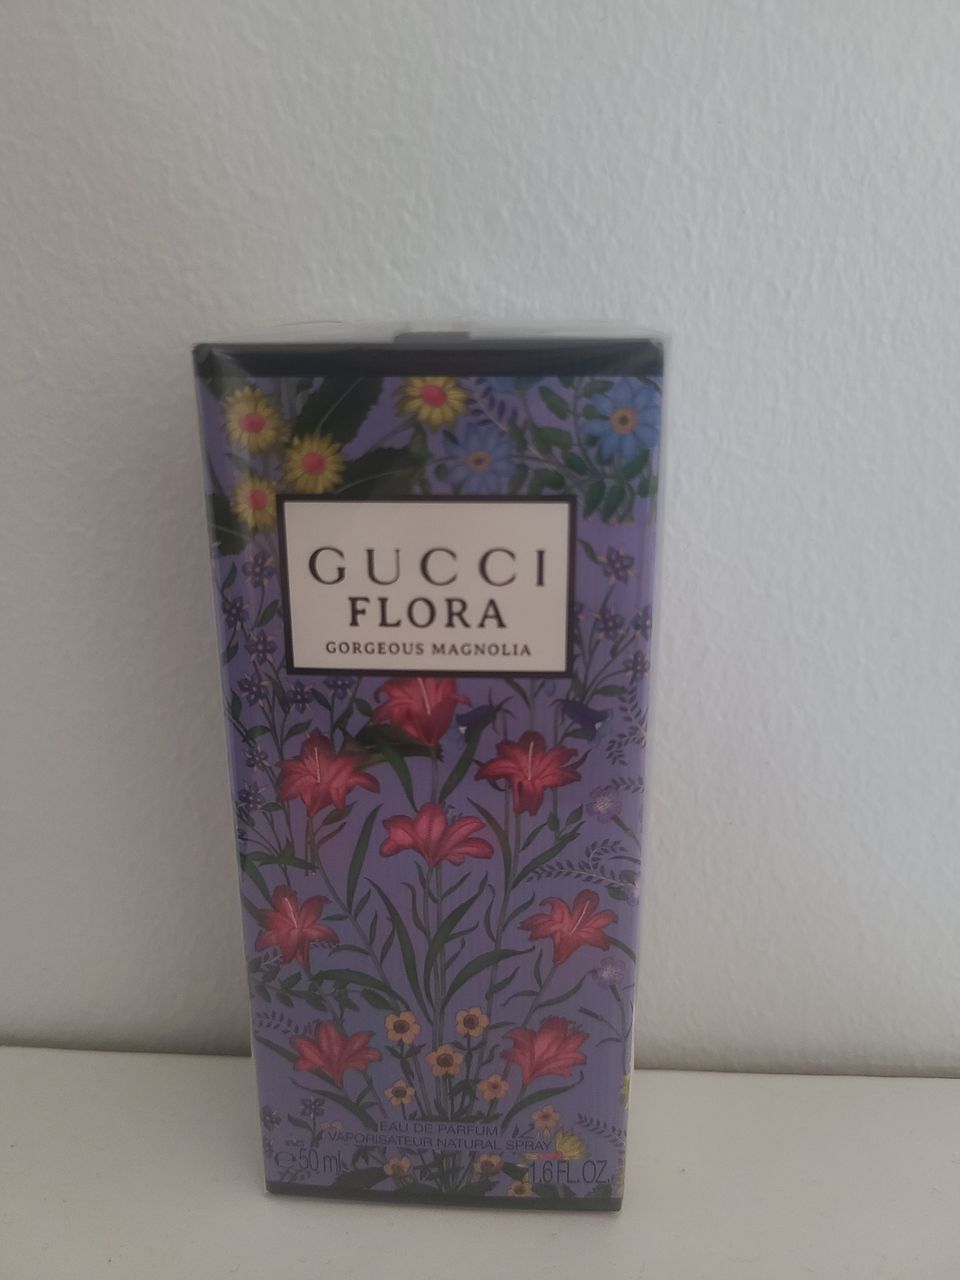 Gucci Flora Gorgeous Magnolia edp 50ml